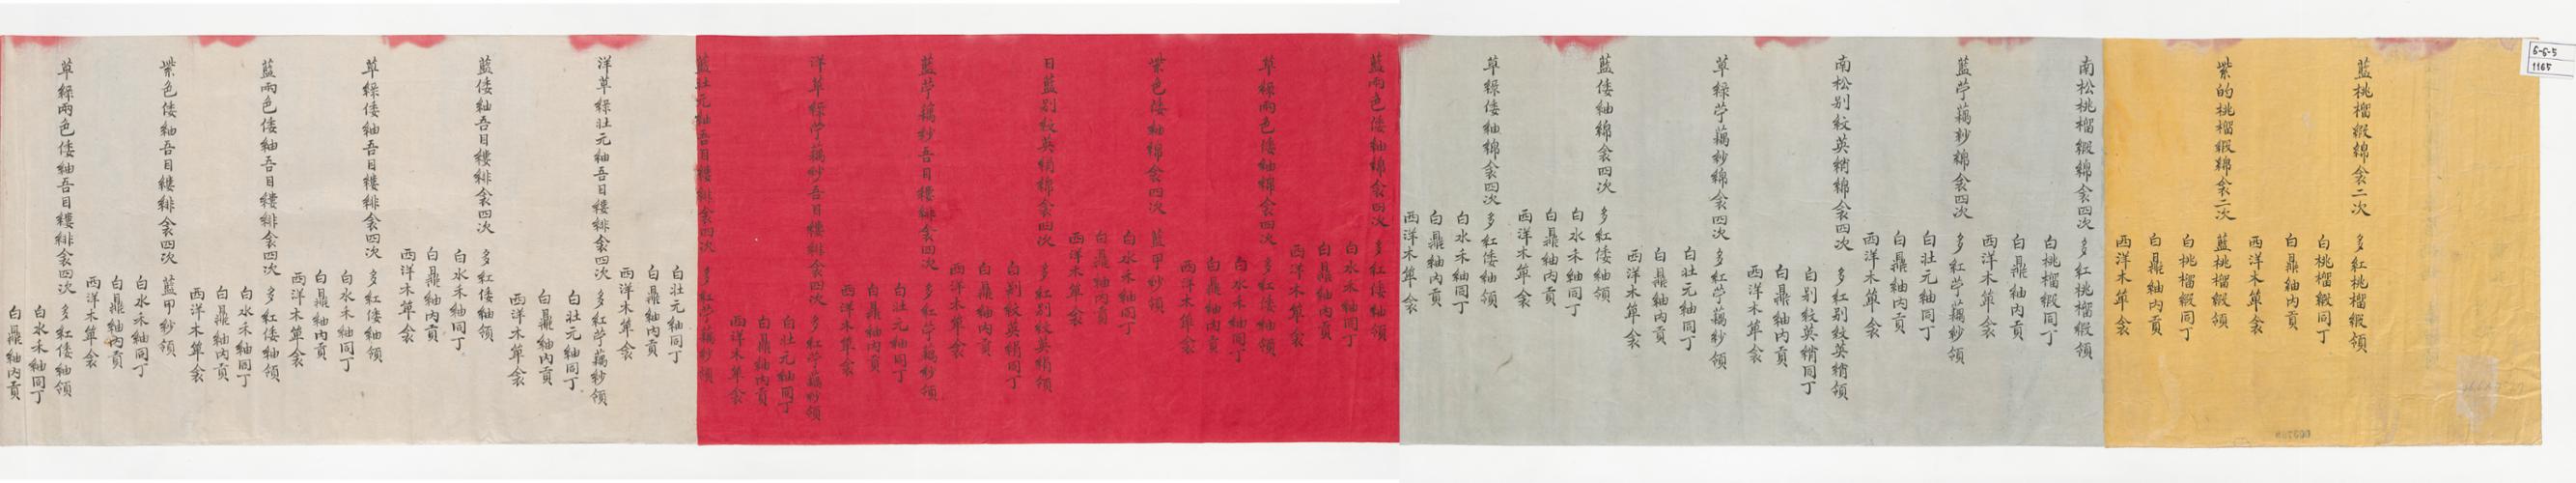 1882년 동궁 가례 시 금, 천의 발기